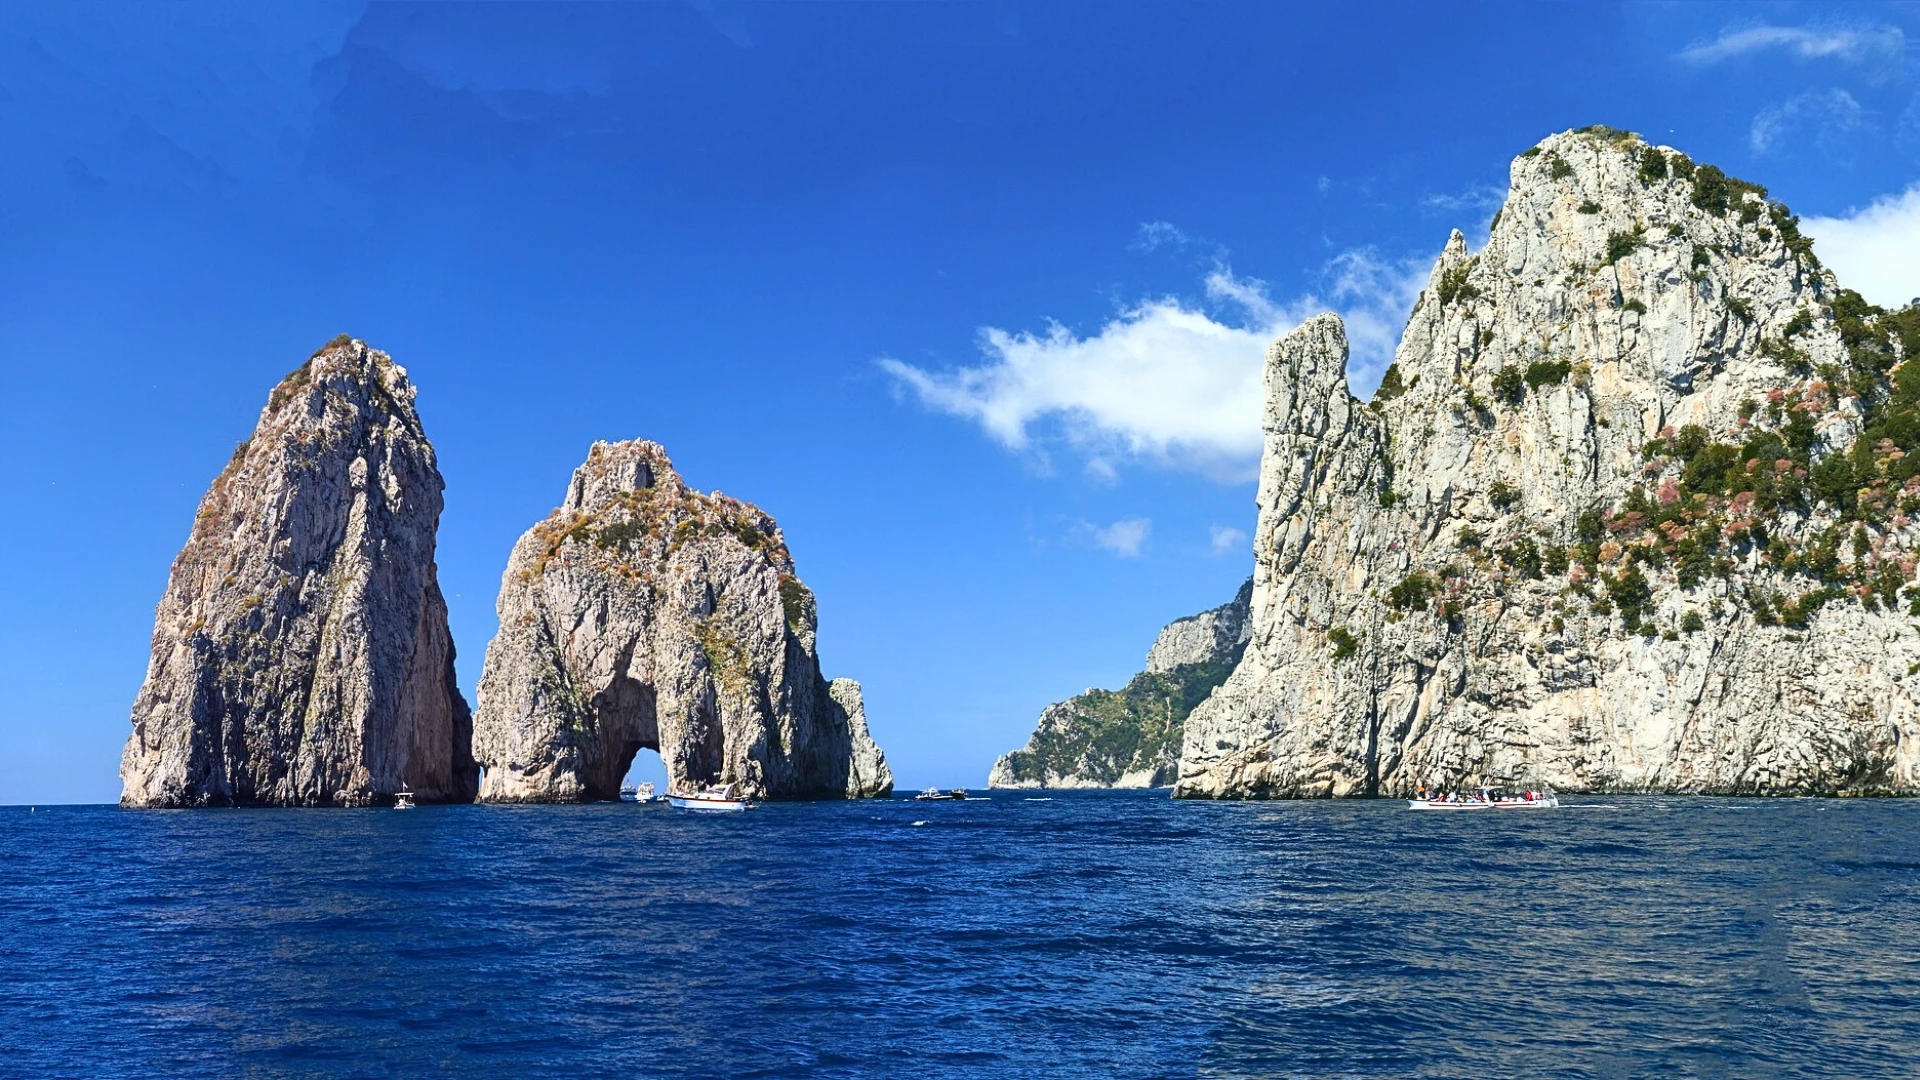 Boat tour in Capri